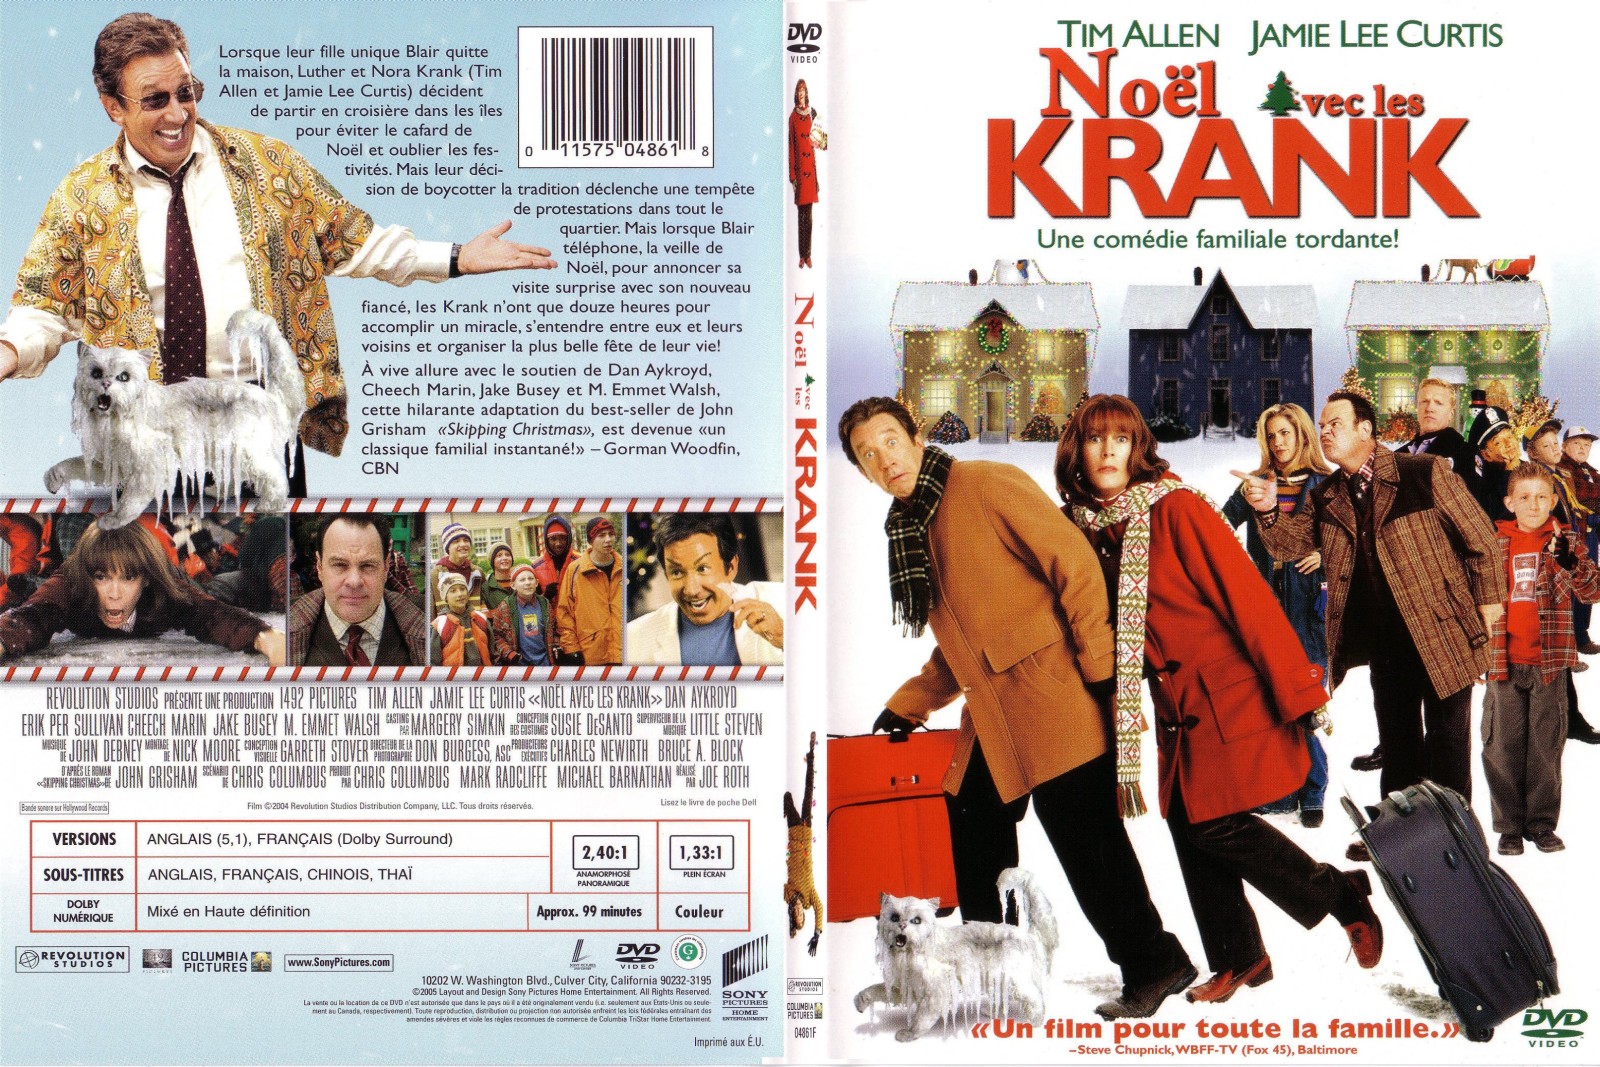 Jaquette DVD Noel avec les Krank - SLIM